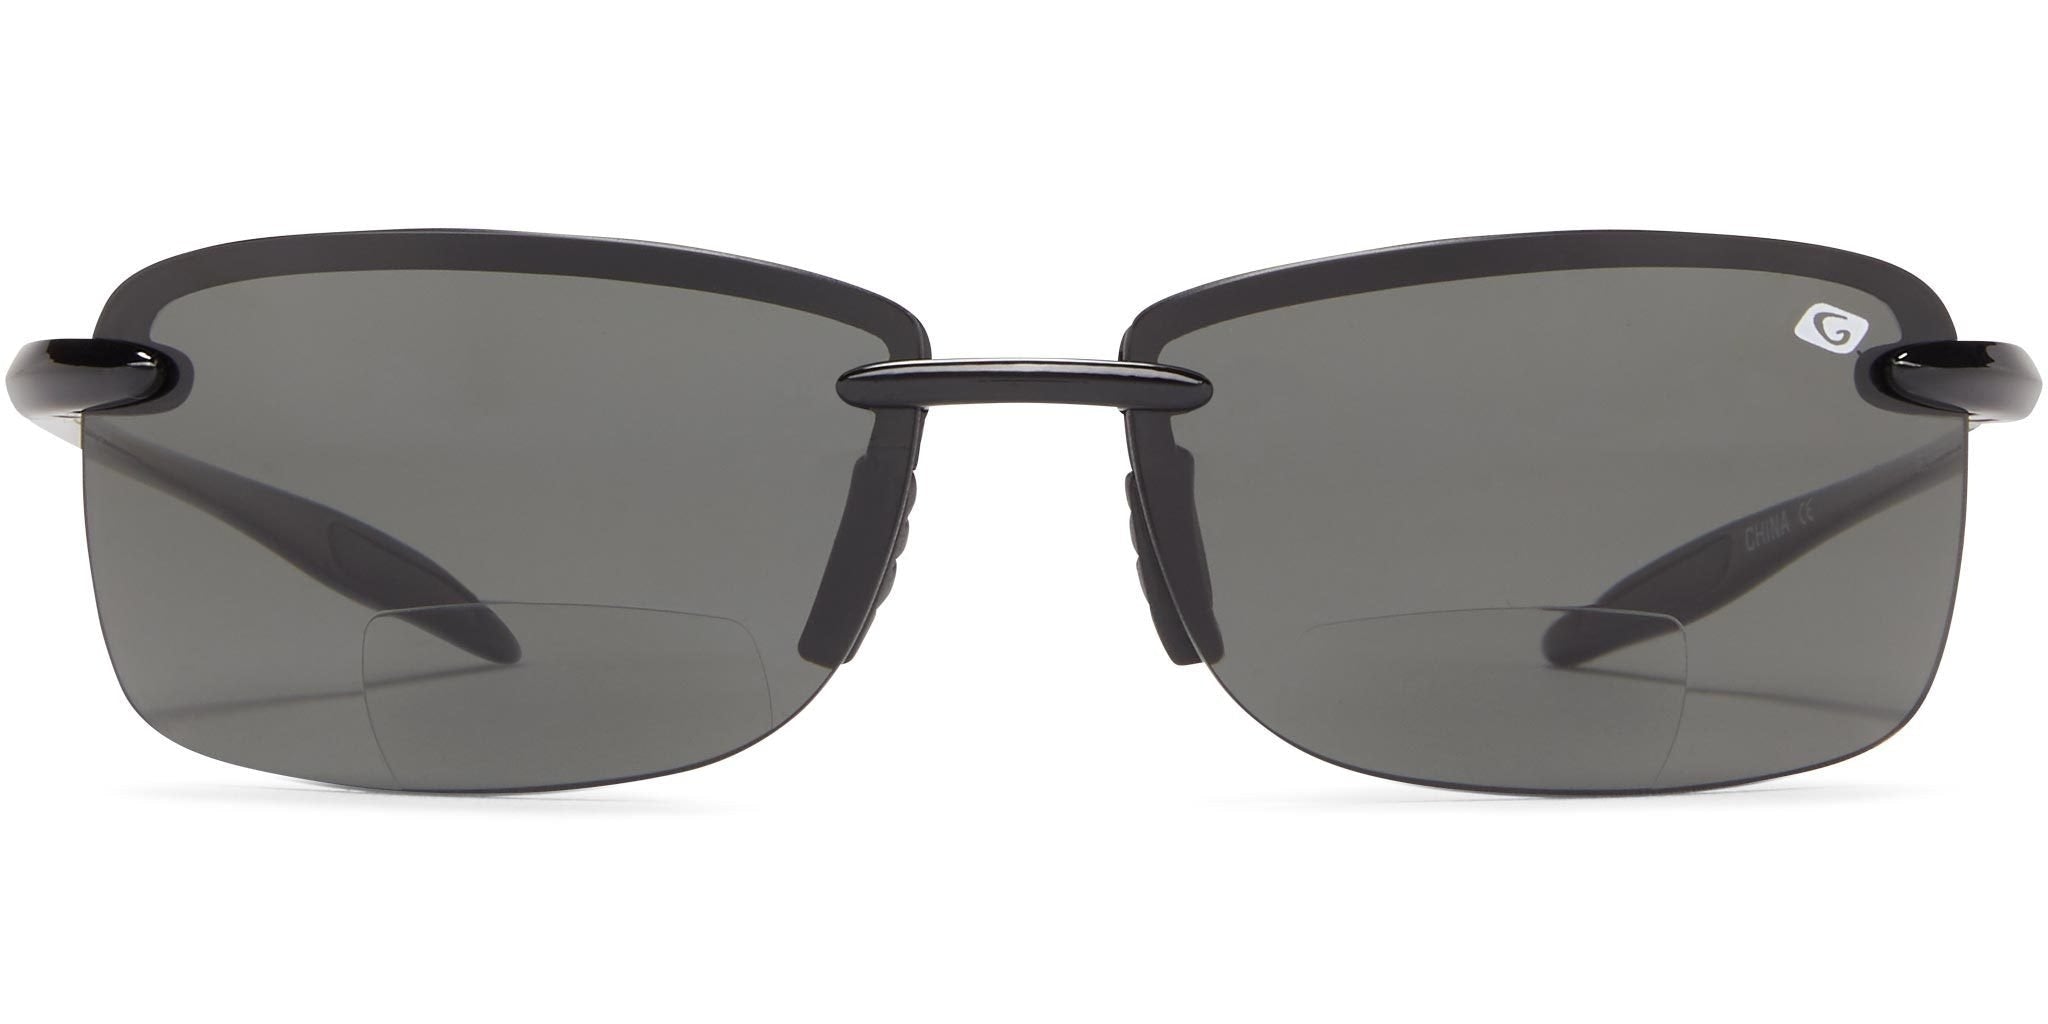 Guideline Eyegear - Del Mar Bifocal Polarized Sunglasses - ICU Eyewear